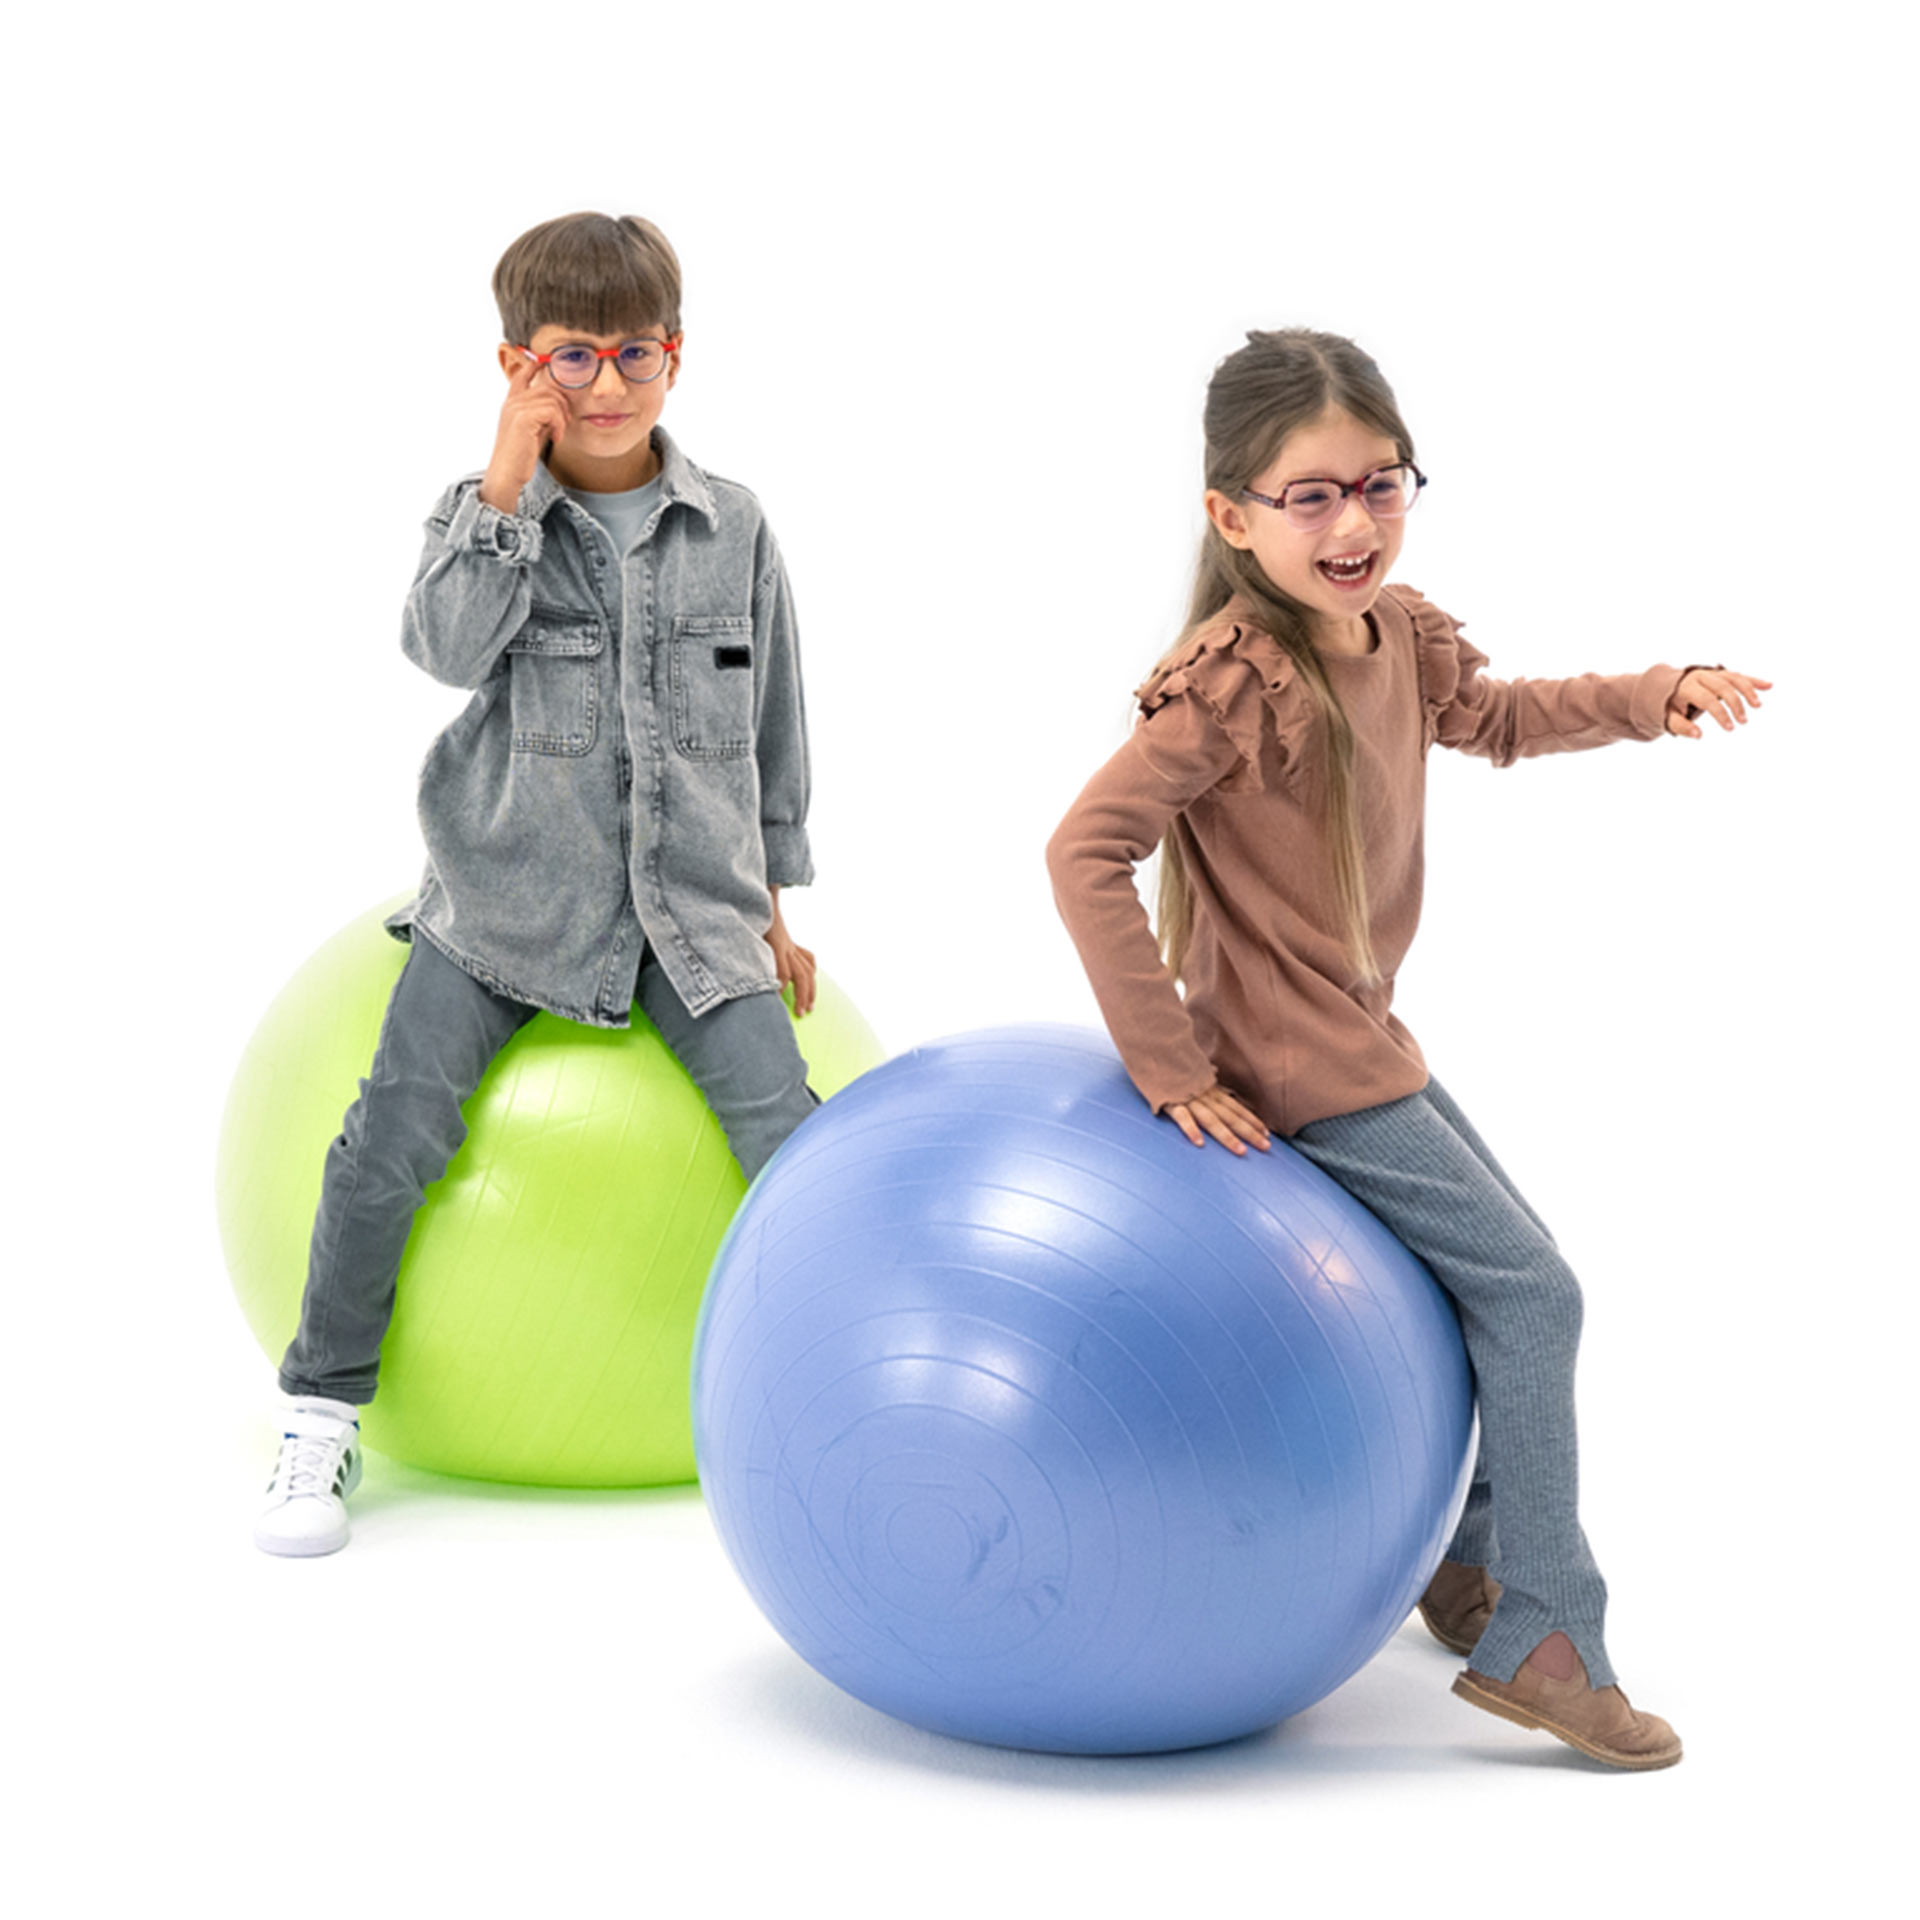 Um menino e uma menina, ambos de óculos, saltitam alegremente em bolas de ginástica.